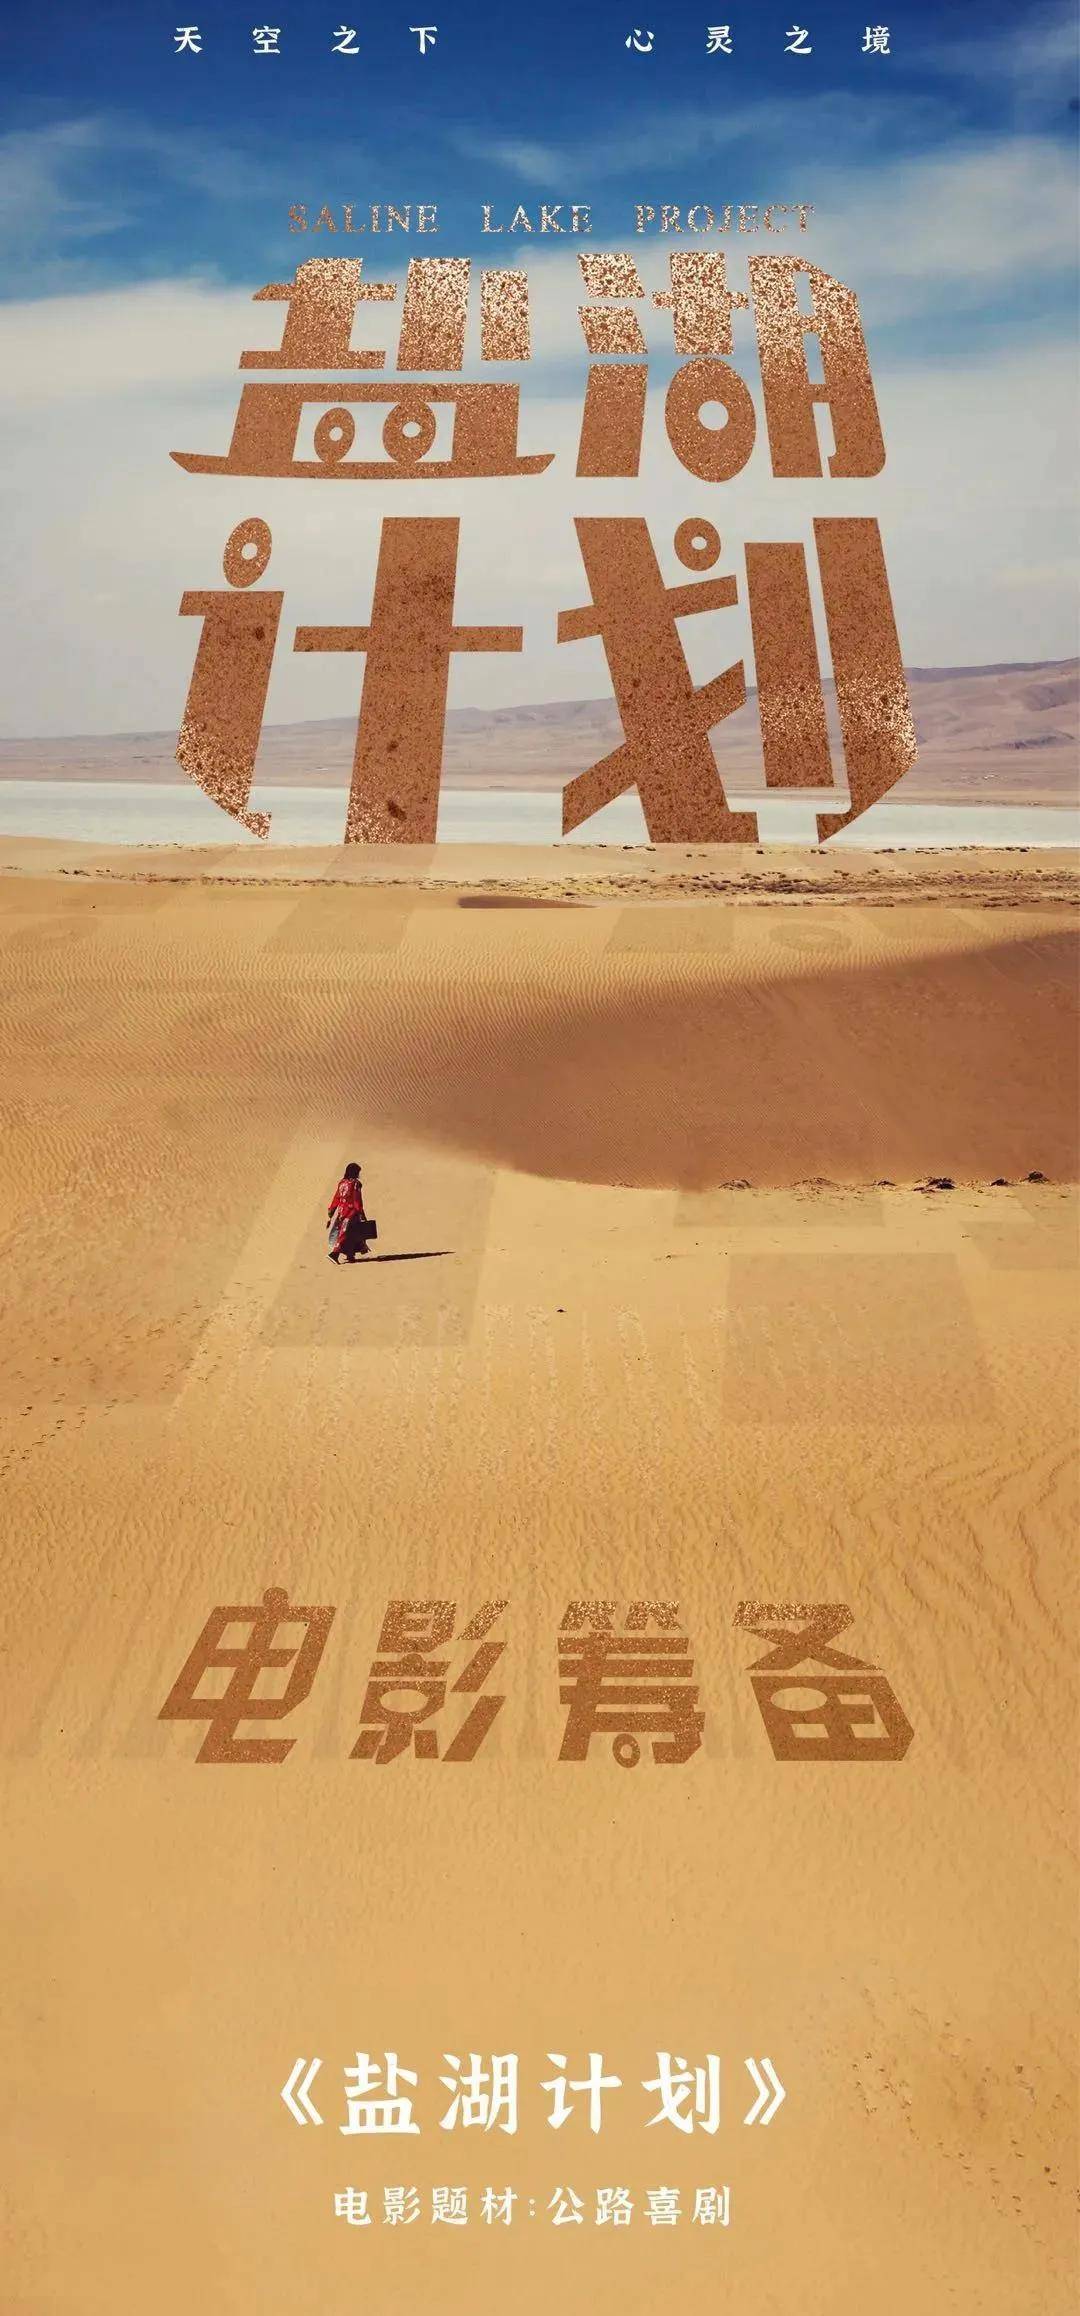 是一部横跨1700公里,贯穿中国中西部所有奇幻地貌的公路喜剧电影